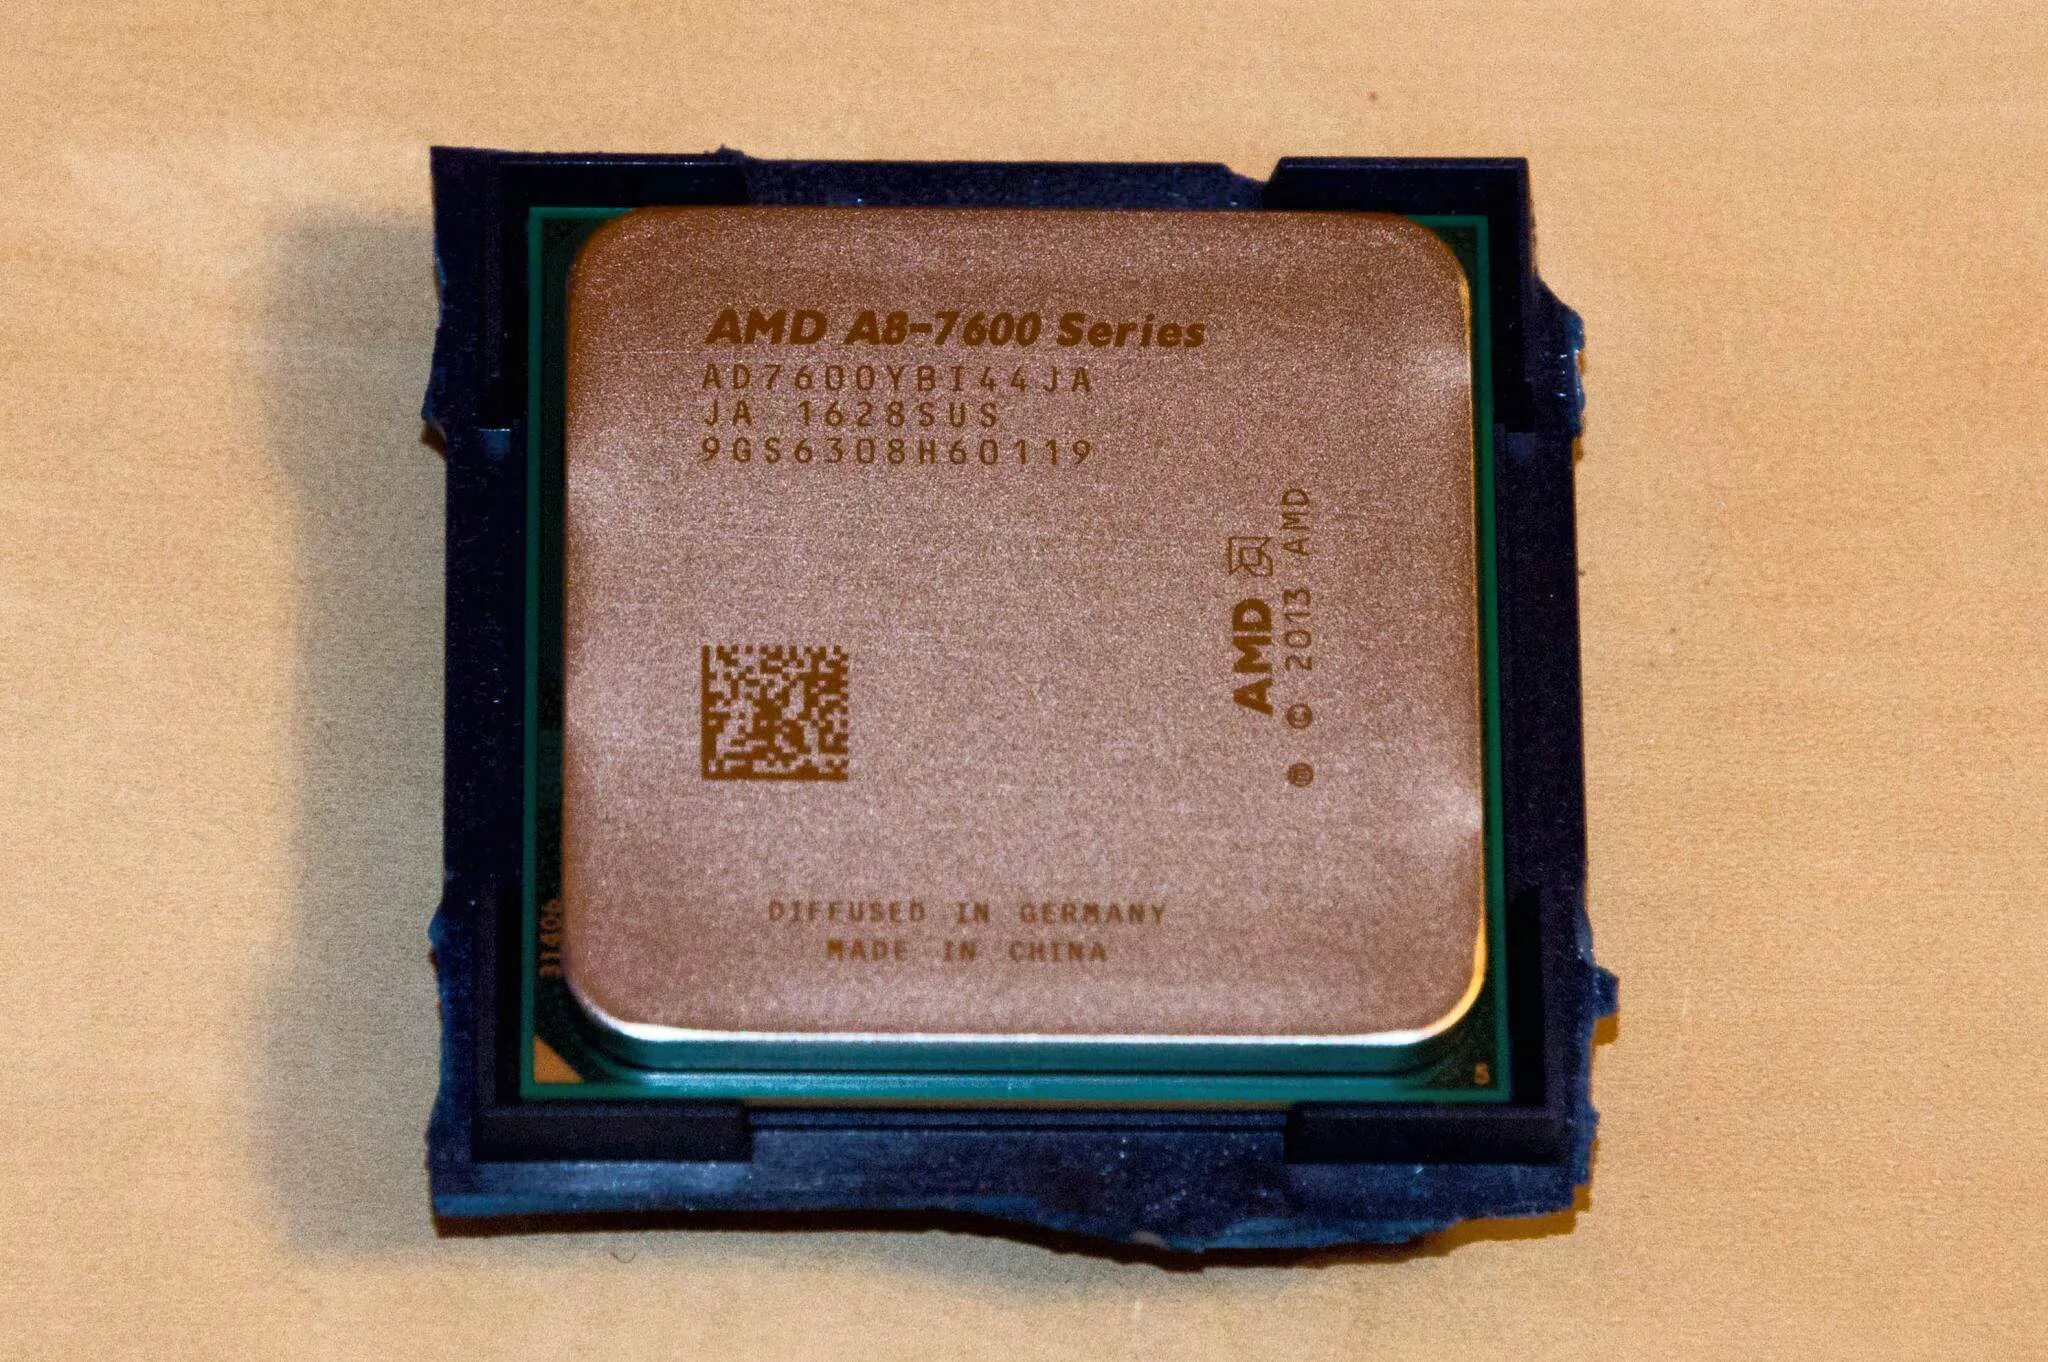 Radeon r7 a8 7600. АМД а8 7600. AMD a8-7600. AMD a8 7600 Radeon r7. AMD a8-7600 kaveri fm2+, 4 x 3100 МГЦ.